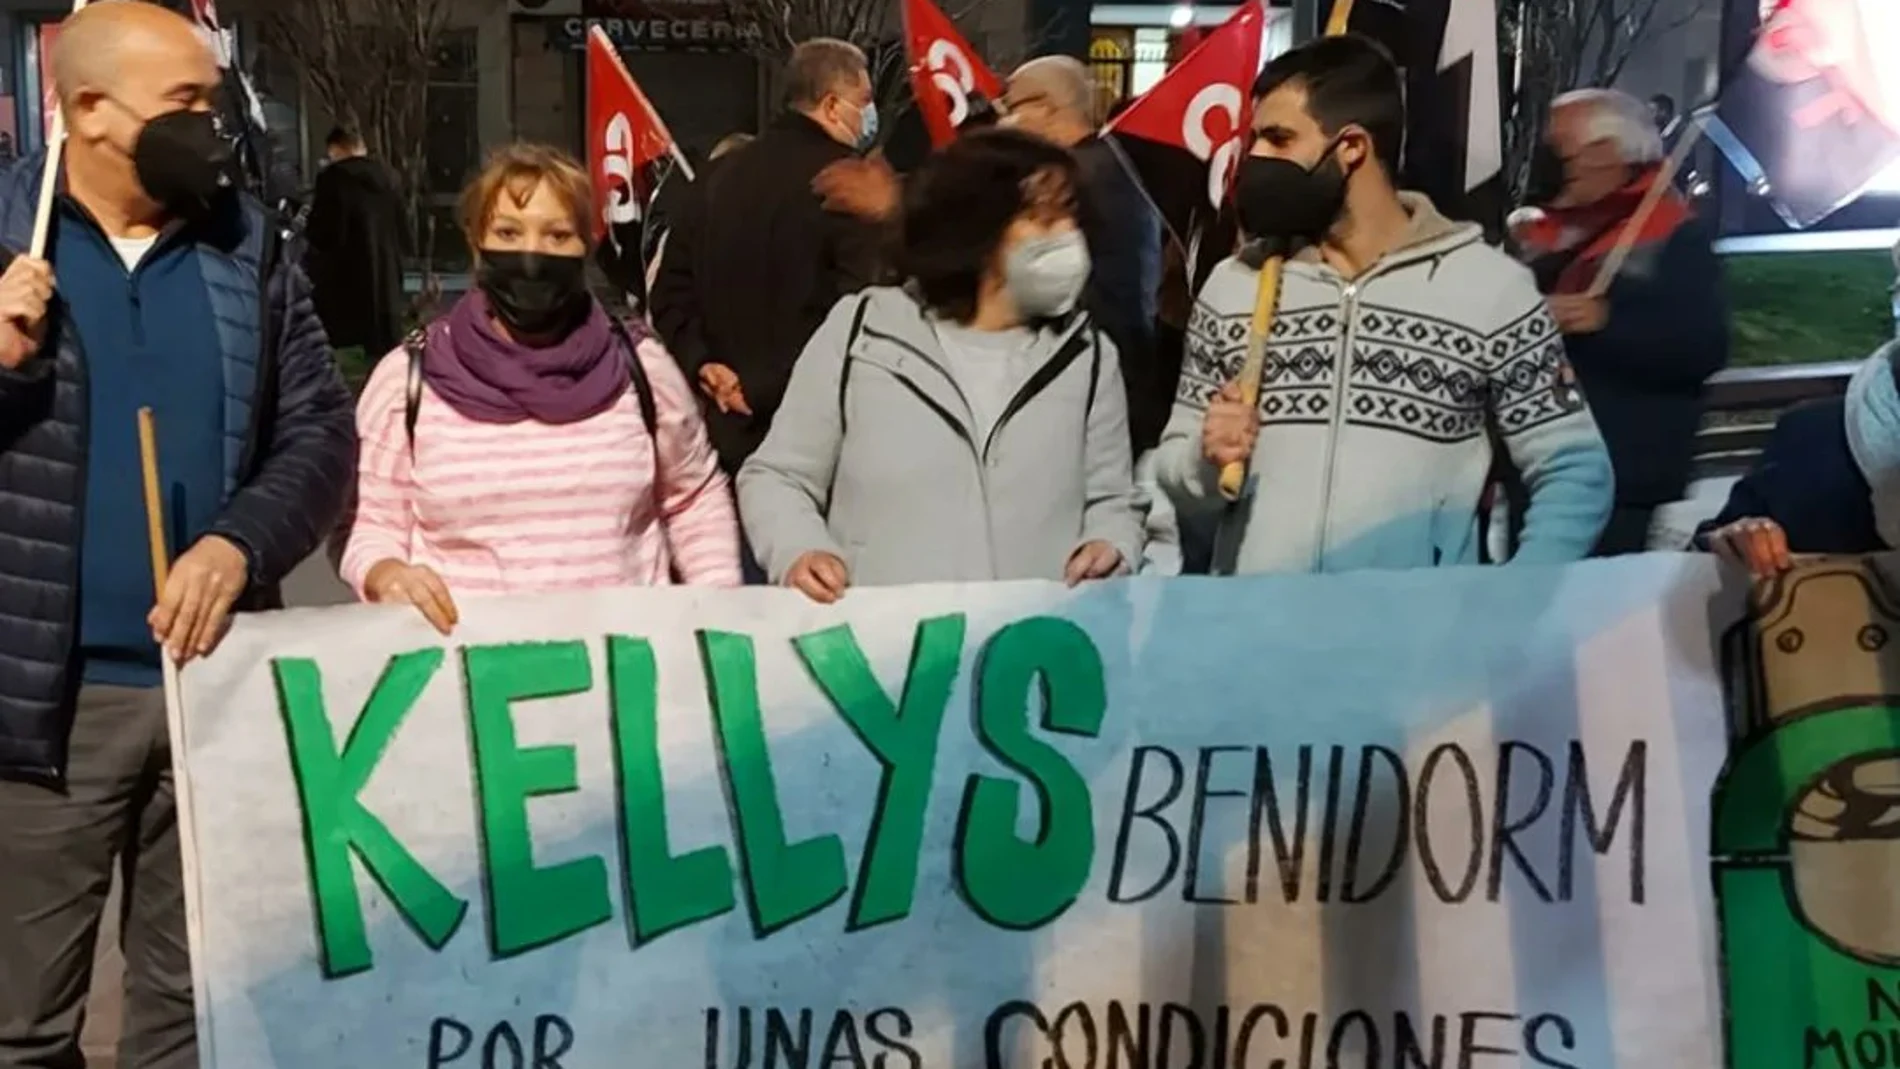 "La reforma es un fraude para muchas kellys no aborda el grave problema de la externalización y nos condena a los convenios de las multiservicio que son las que nos contratan dejándonos  fuera de las plantillas", lamentan las Kellys de Benidorm